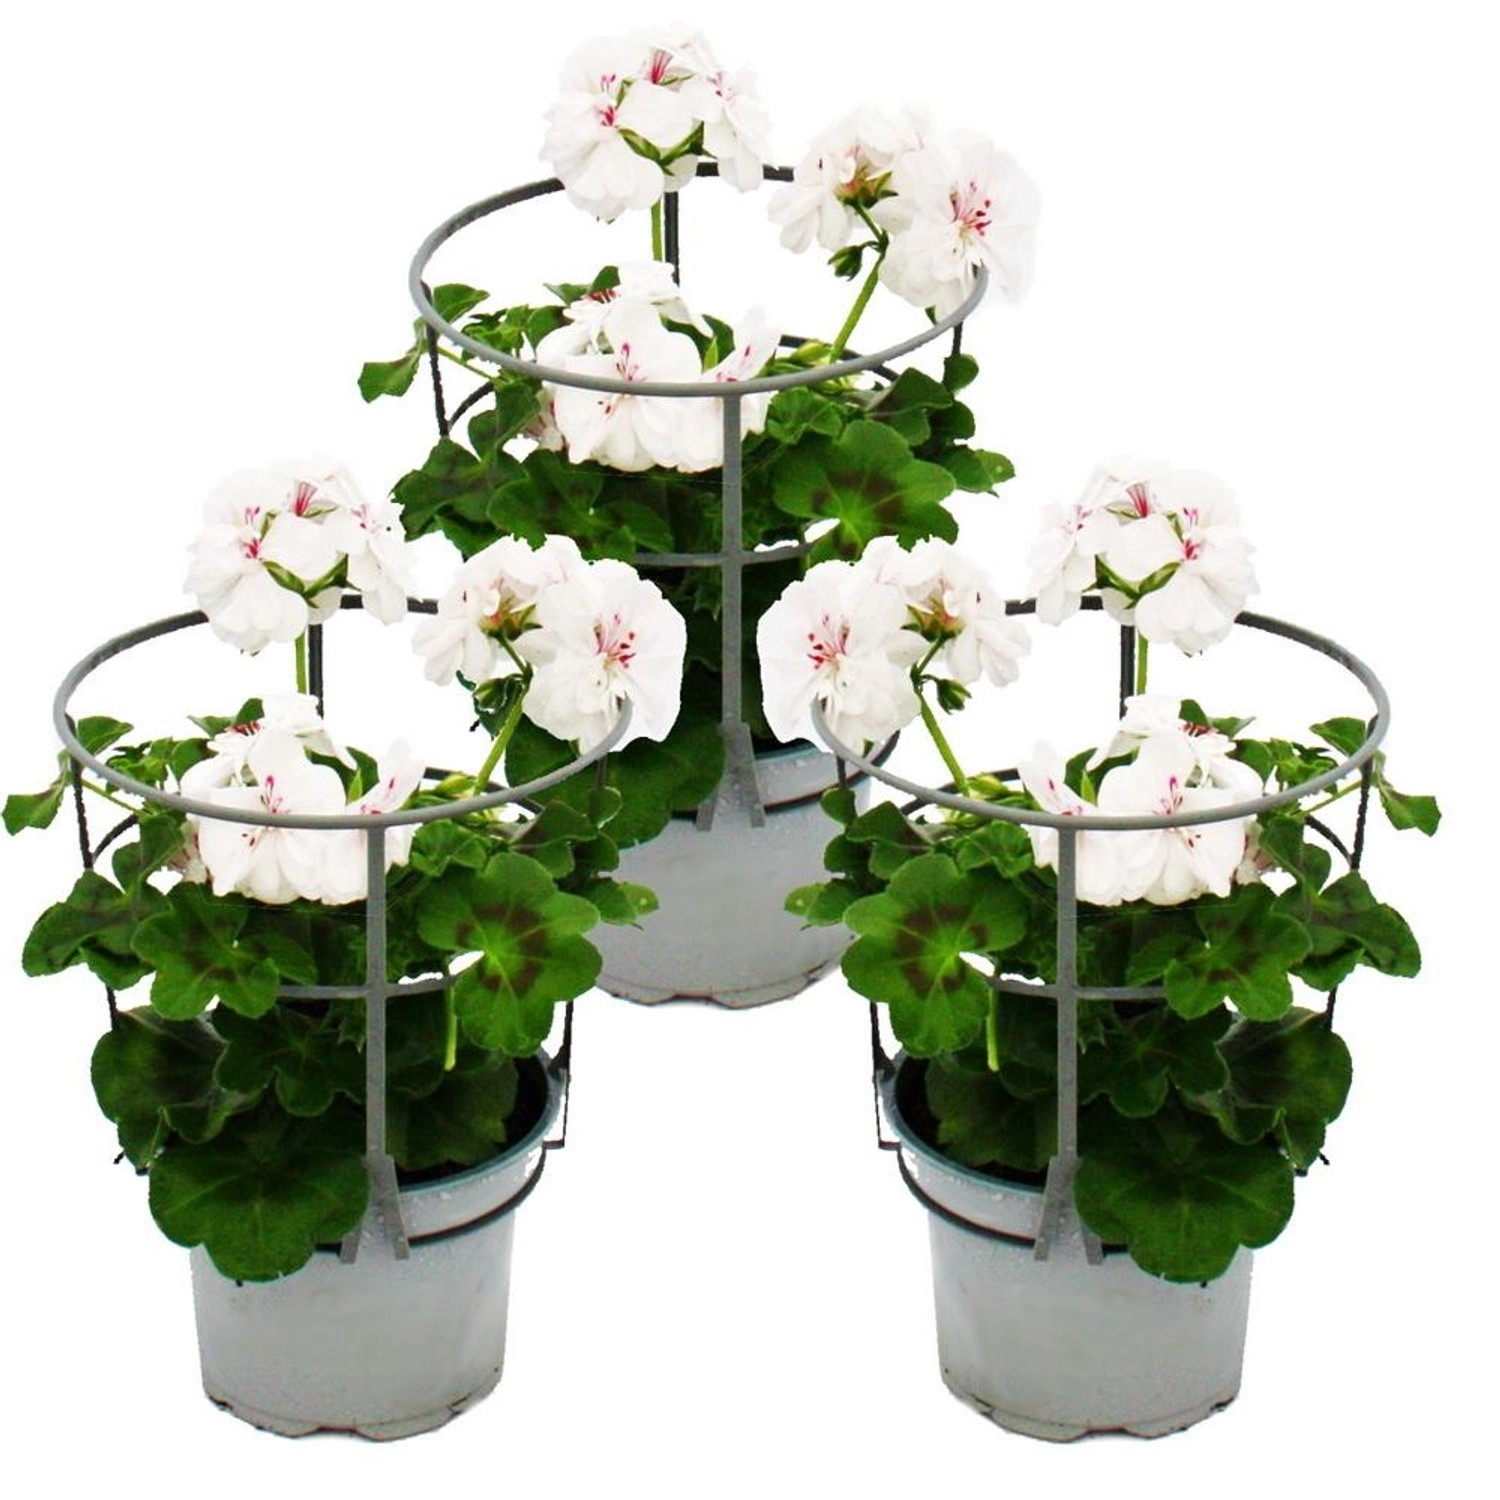 Exotenherz Geranien Hängend Pelargonium Peltatum 12cm Topf Set mit 3 Pflanzen Weiß